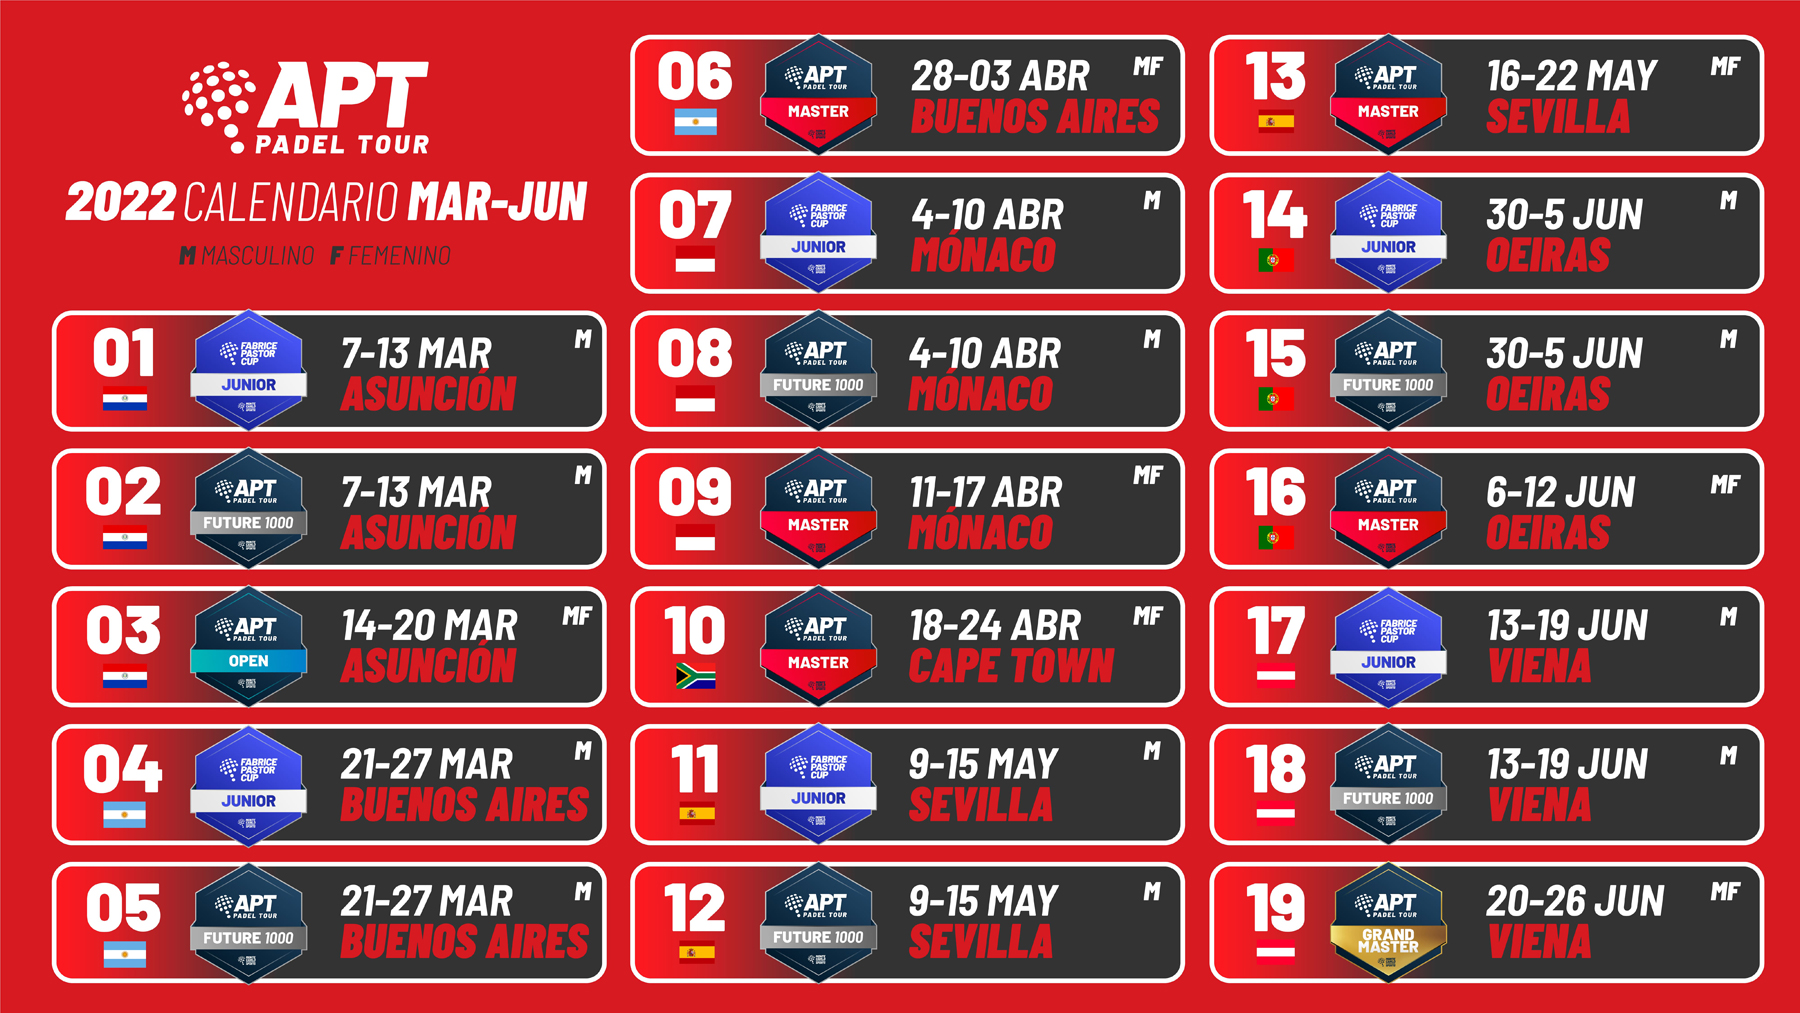 Den detaljerade kalendern från mars till juni för APT Padel Tour